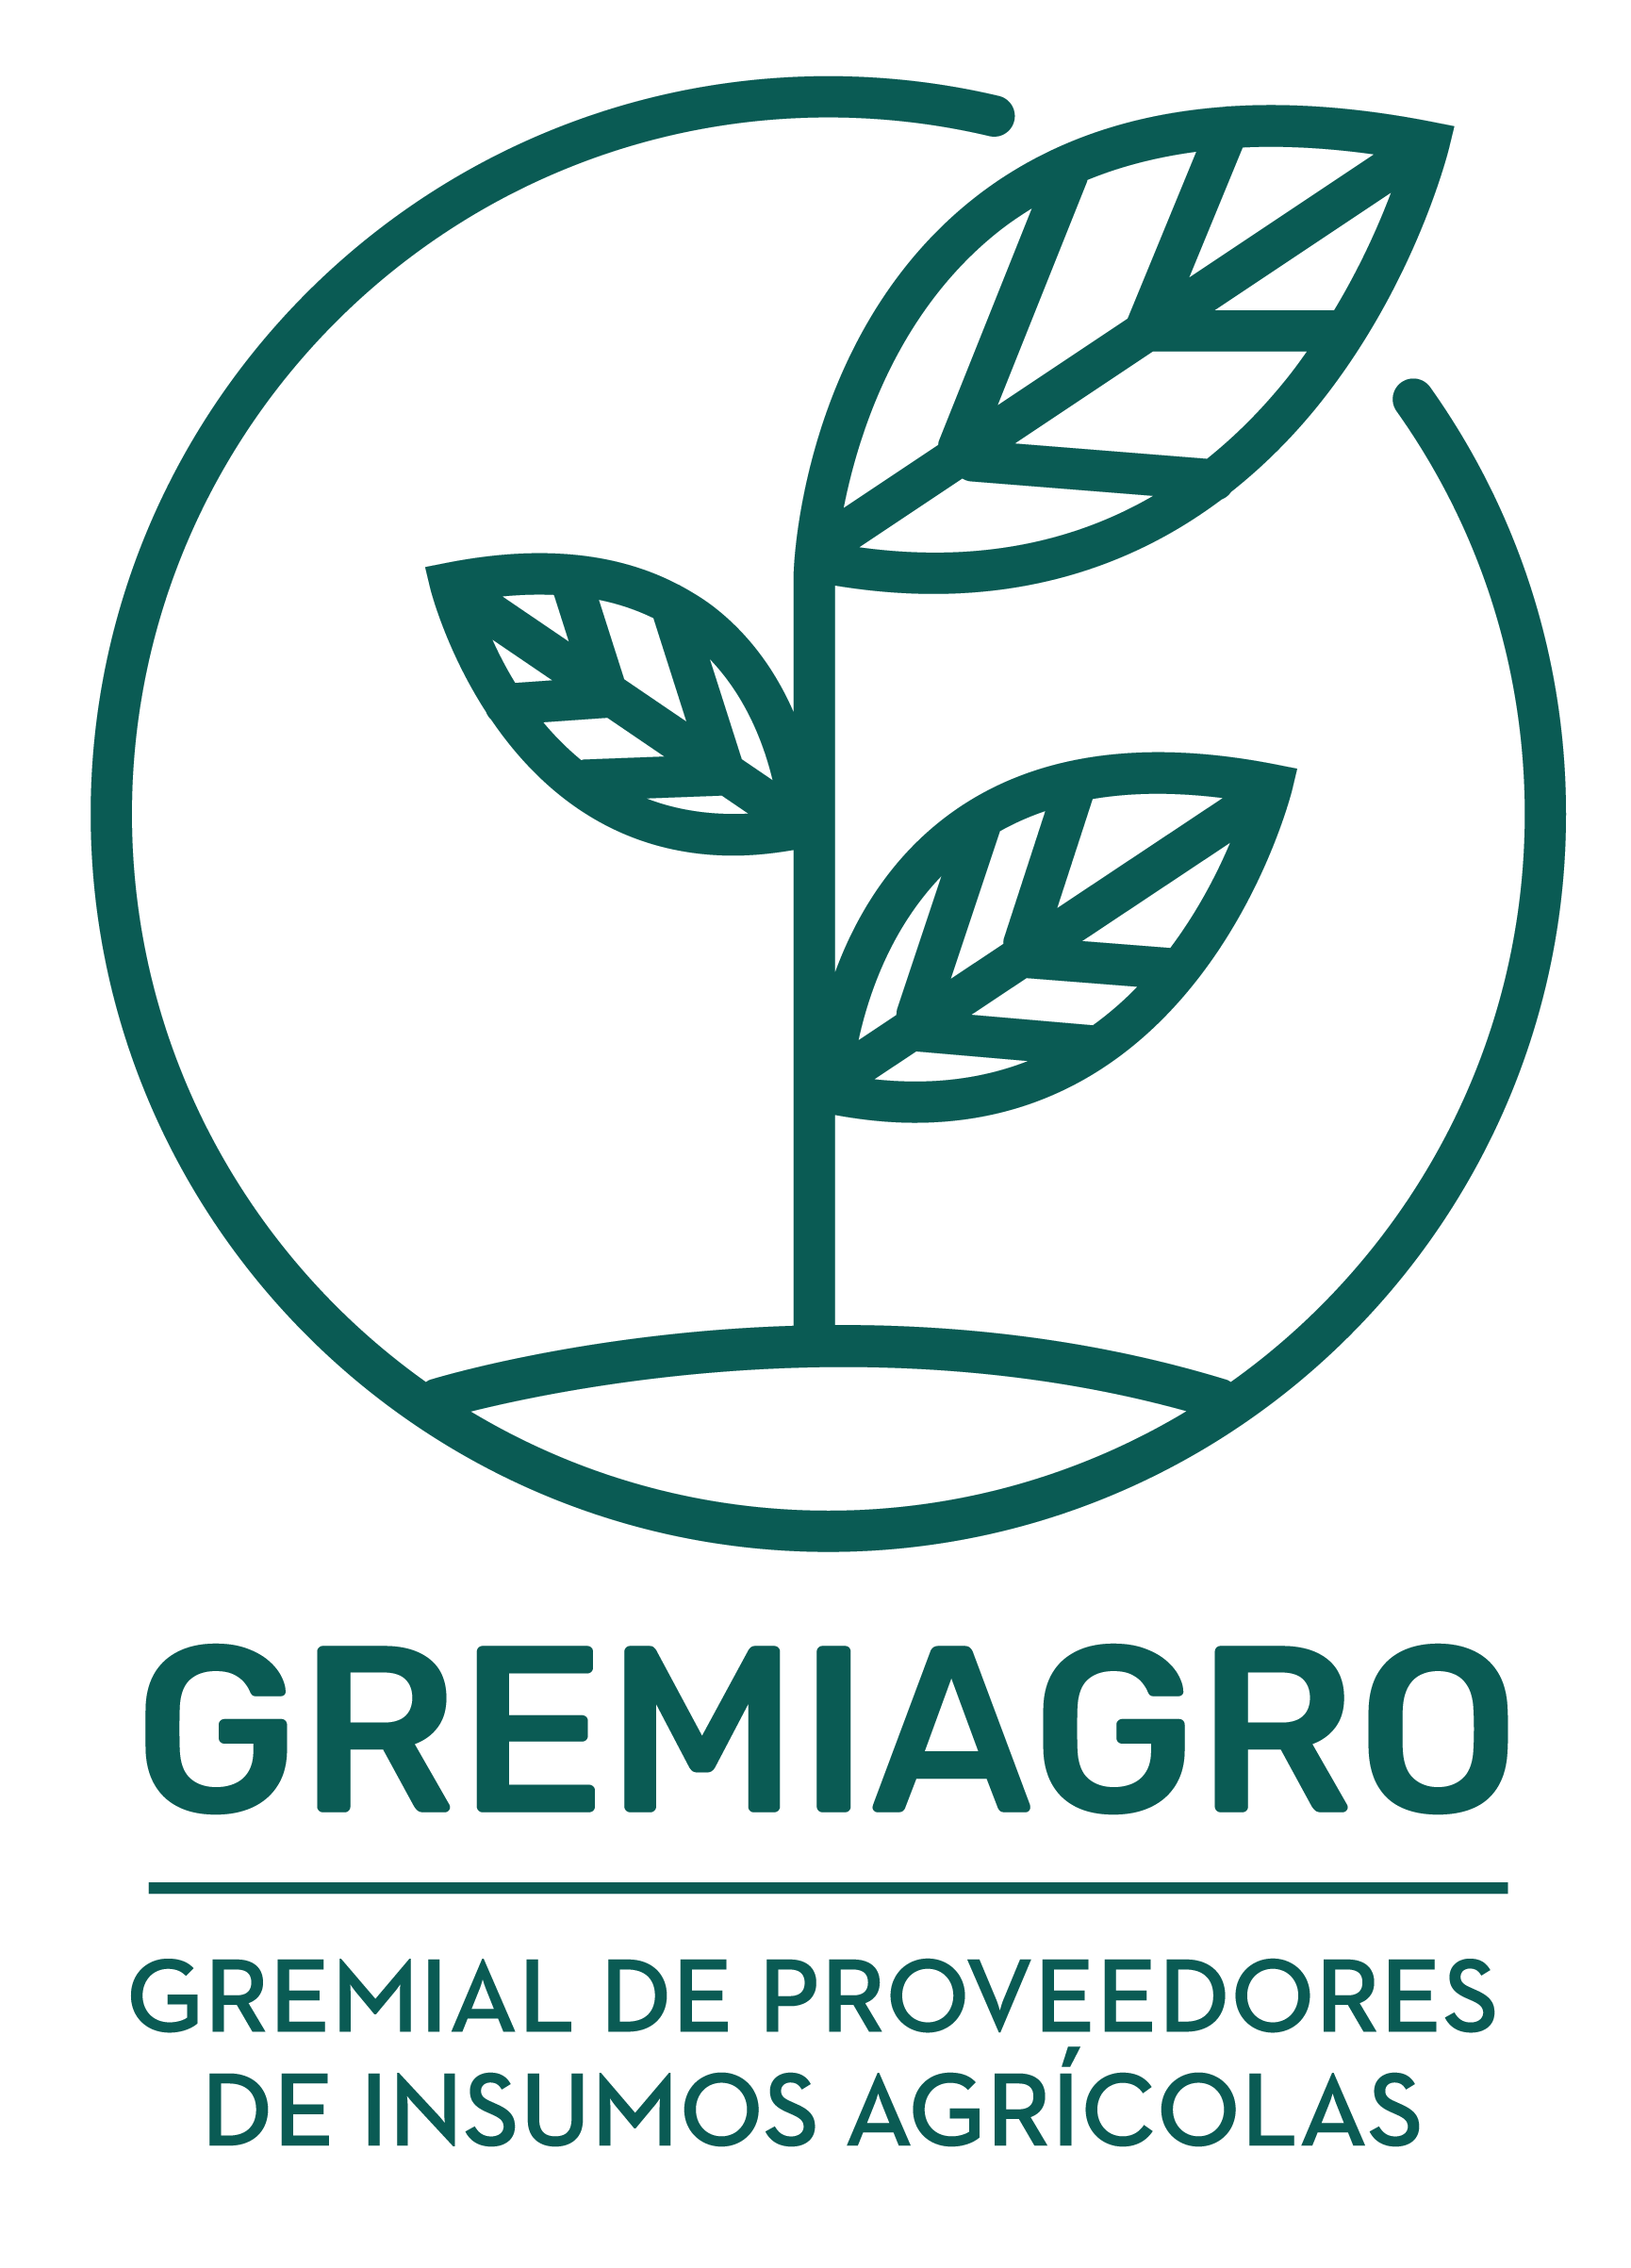 Gremiagro_logo